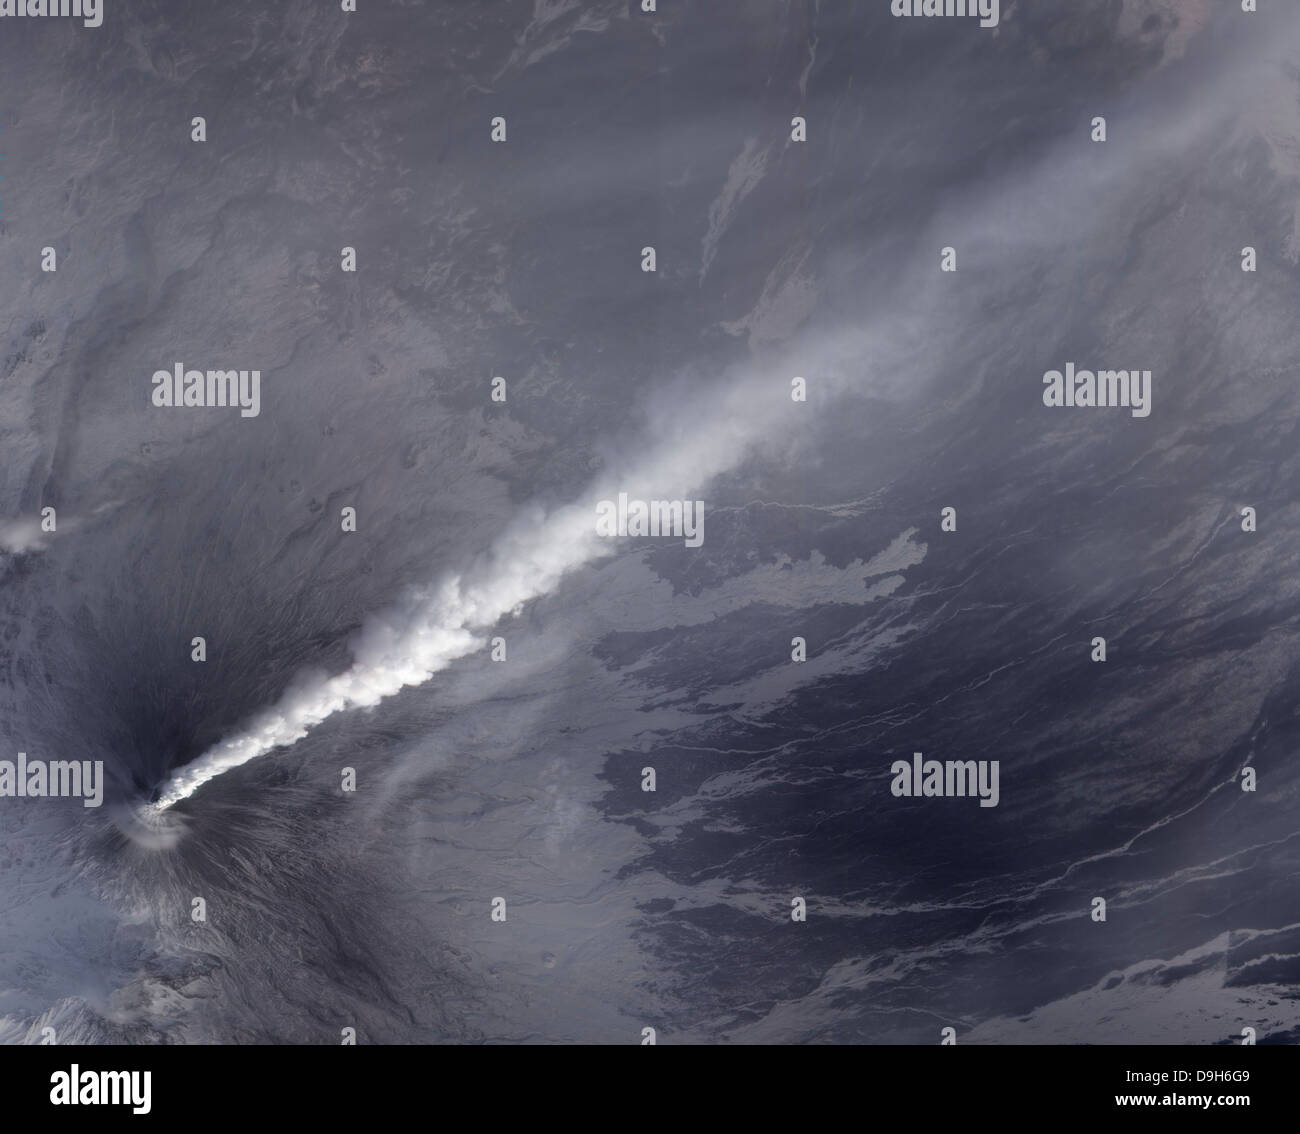 4. Dezember 2010 - eine Wolke aus Asche, streamen Dampf und anderen vulkanischen Gasen von Vulkan Klyuchevskaya. Stockfoto